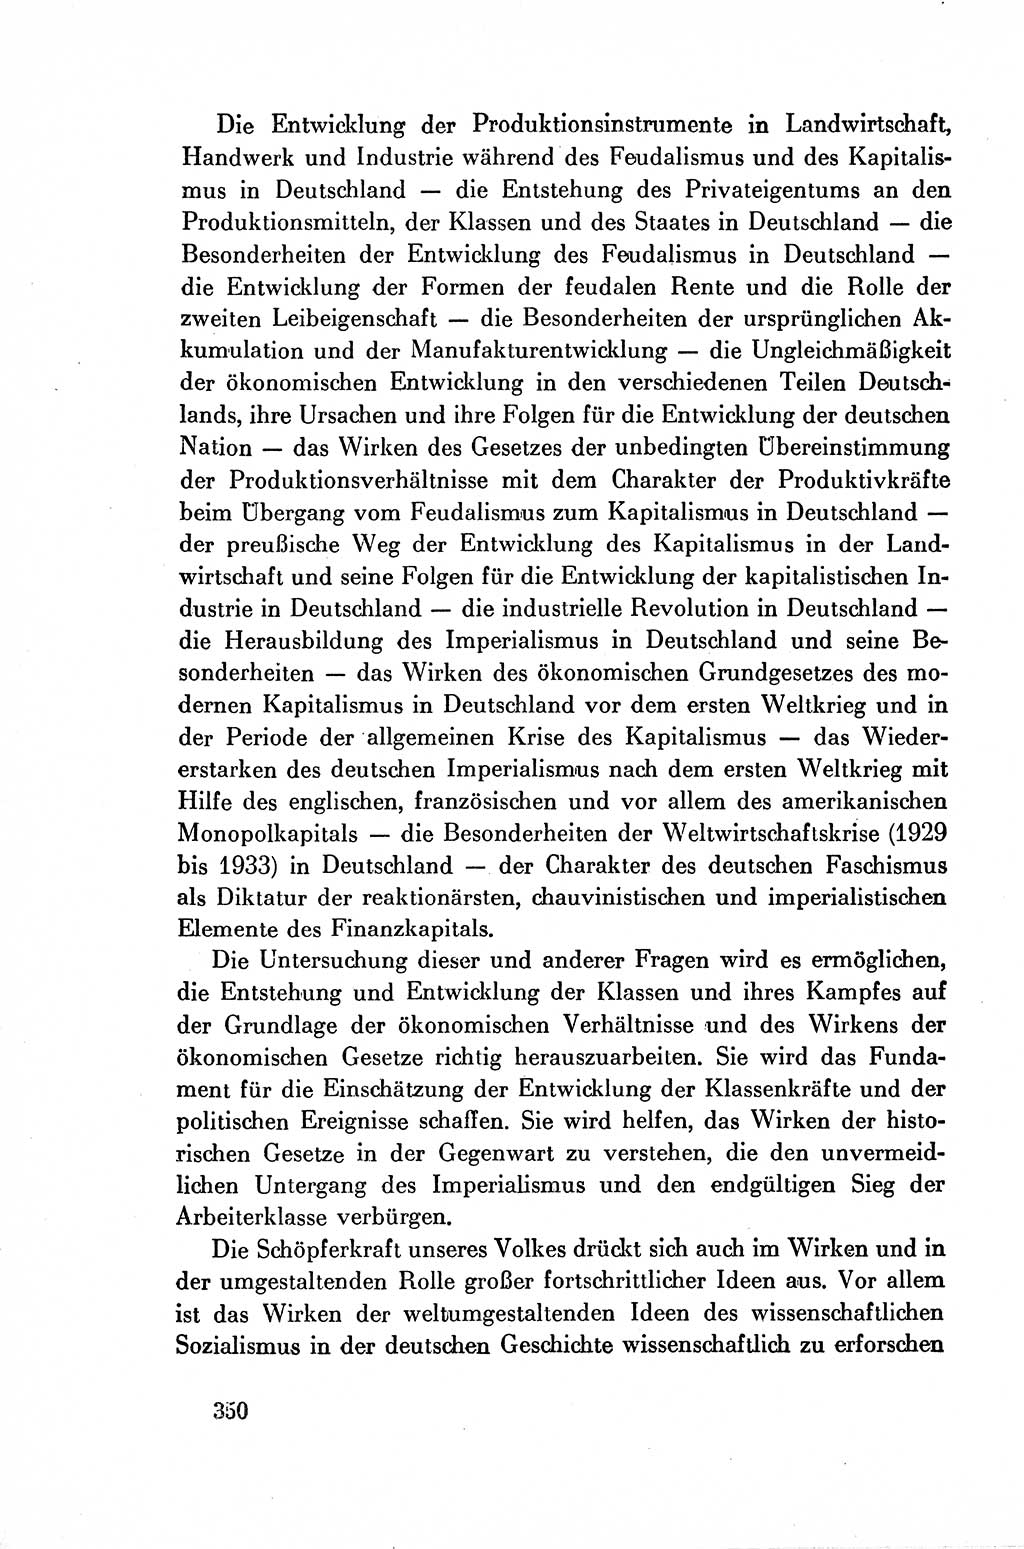 Dokumente der Sozialistischen Einheitspartei Deutschlands (SED) [Deutsche Demokratische Republik (DDR)] 1954-1955, Seite 350 (Dok. SED DDR 1954-1955, S. 350)